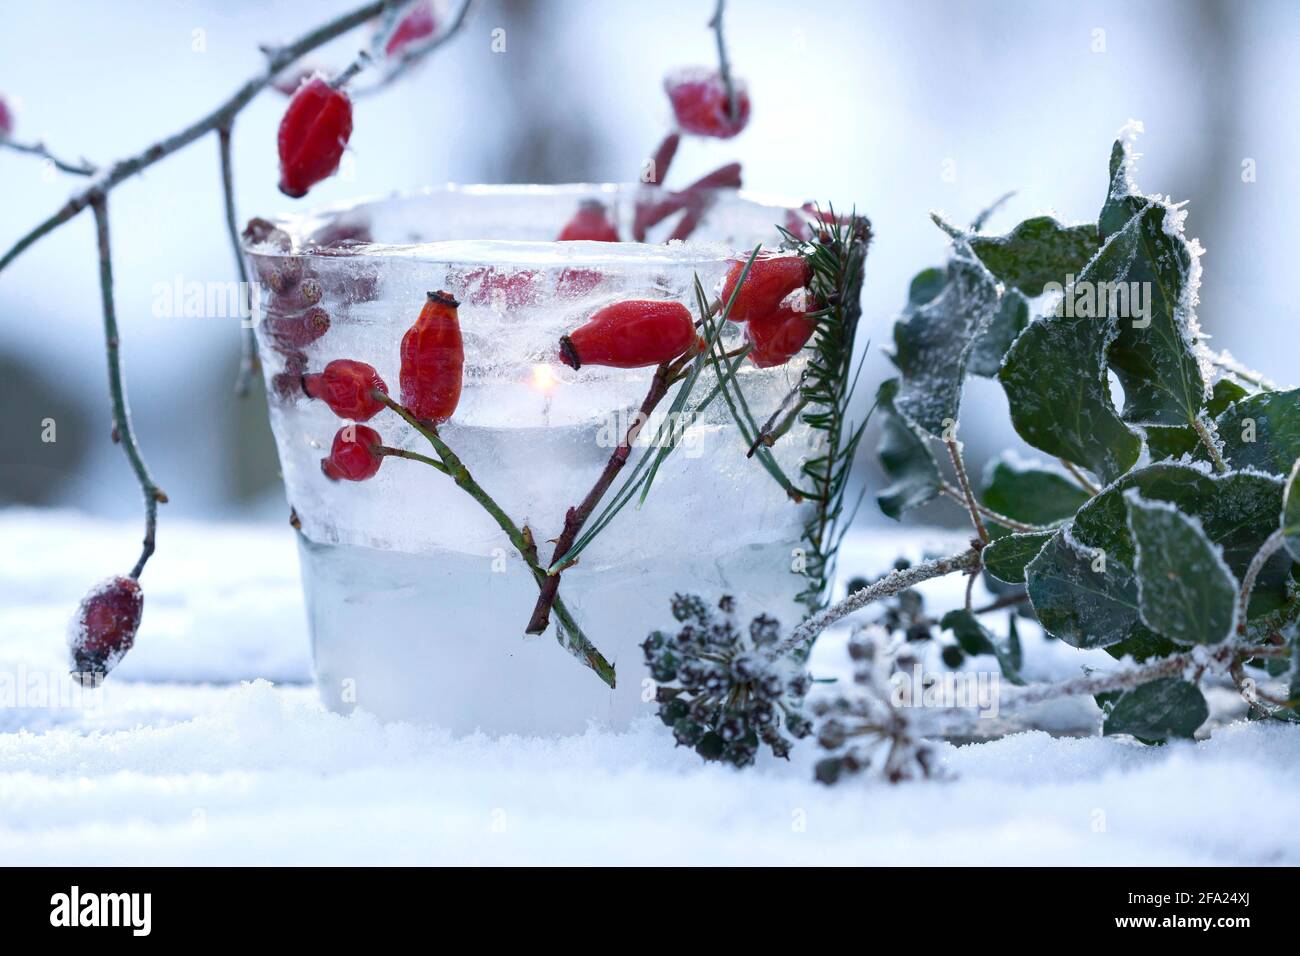 Eislaterne, Kerze brennt in einer Eisschüssel, die mit gefrorenen natürlichen Materialien verziert ist, die im Eis, Deutschland, eingeschlossen sind Stockfoto